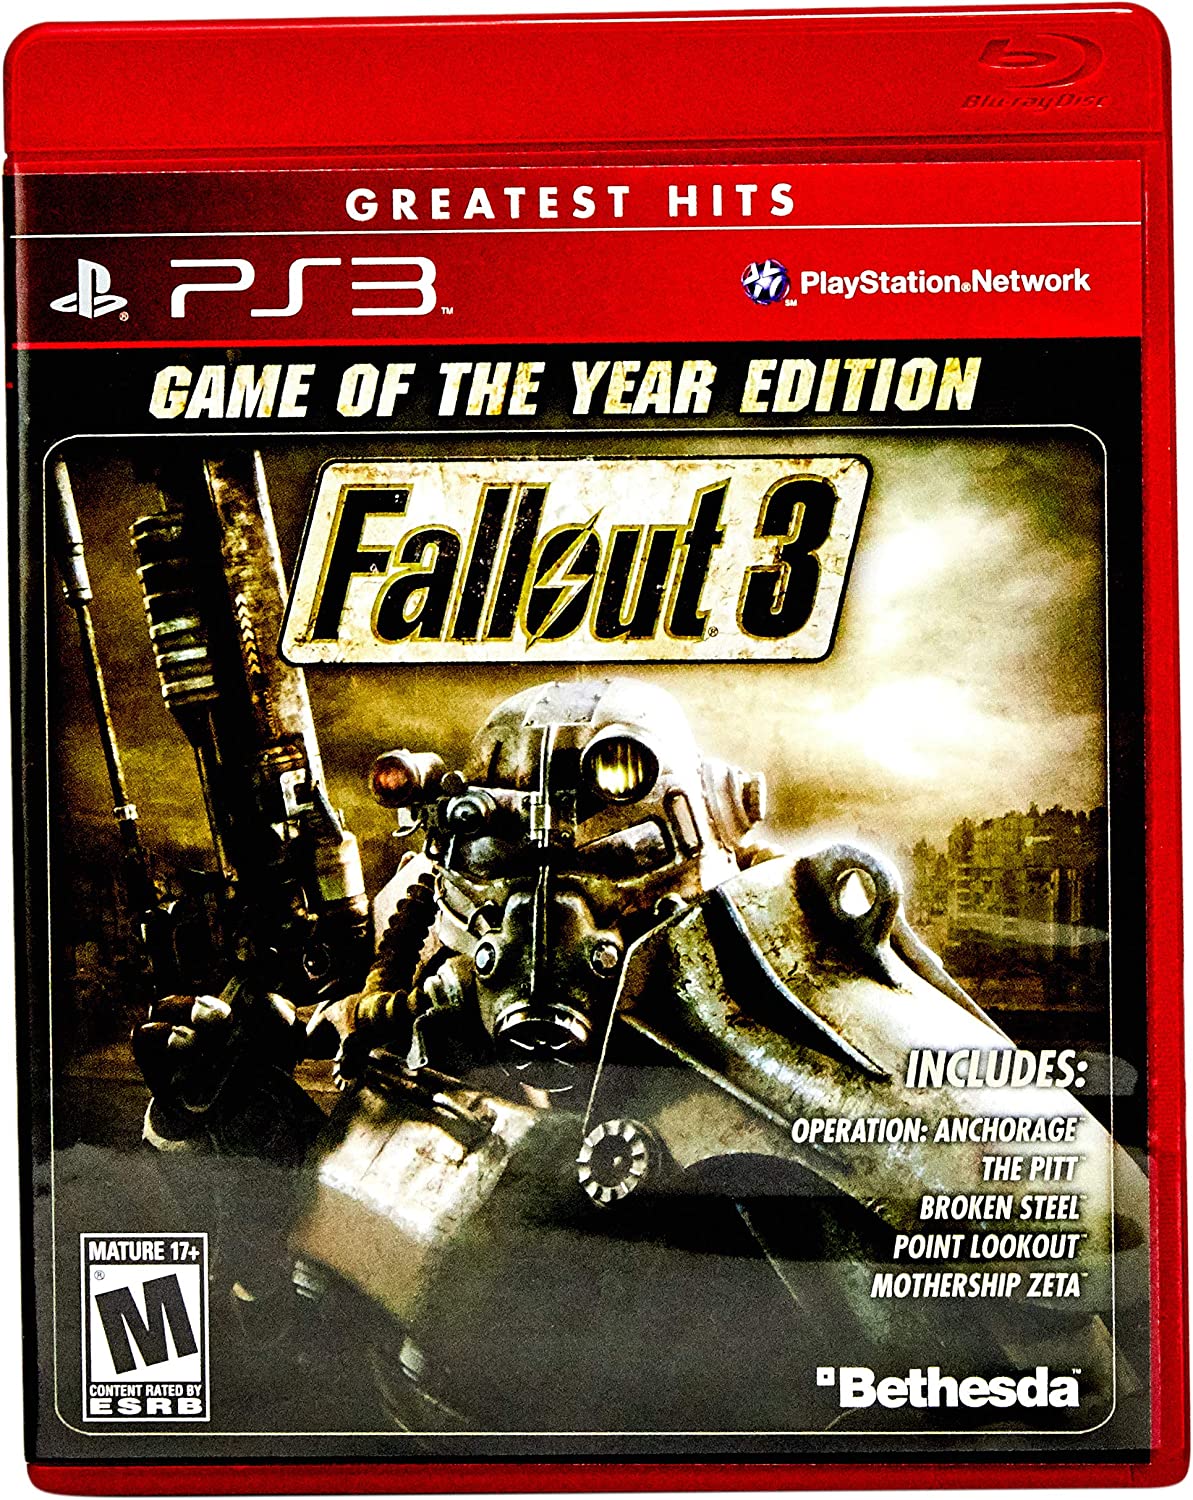 Fallout 3 - Xbox 360 (SEMI-NOVO)  Compra e venda de jogos e consoles